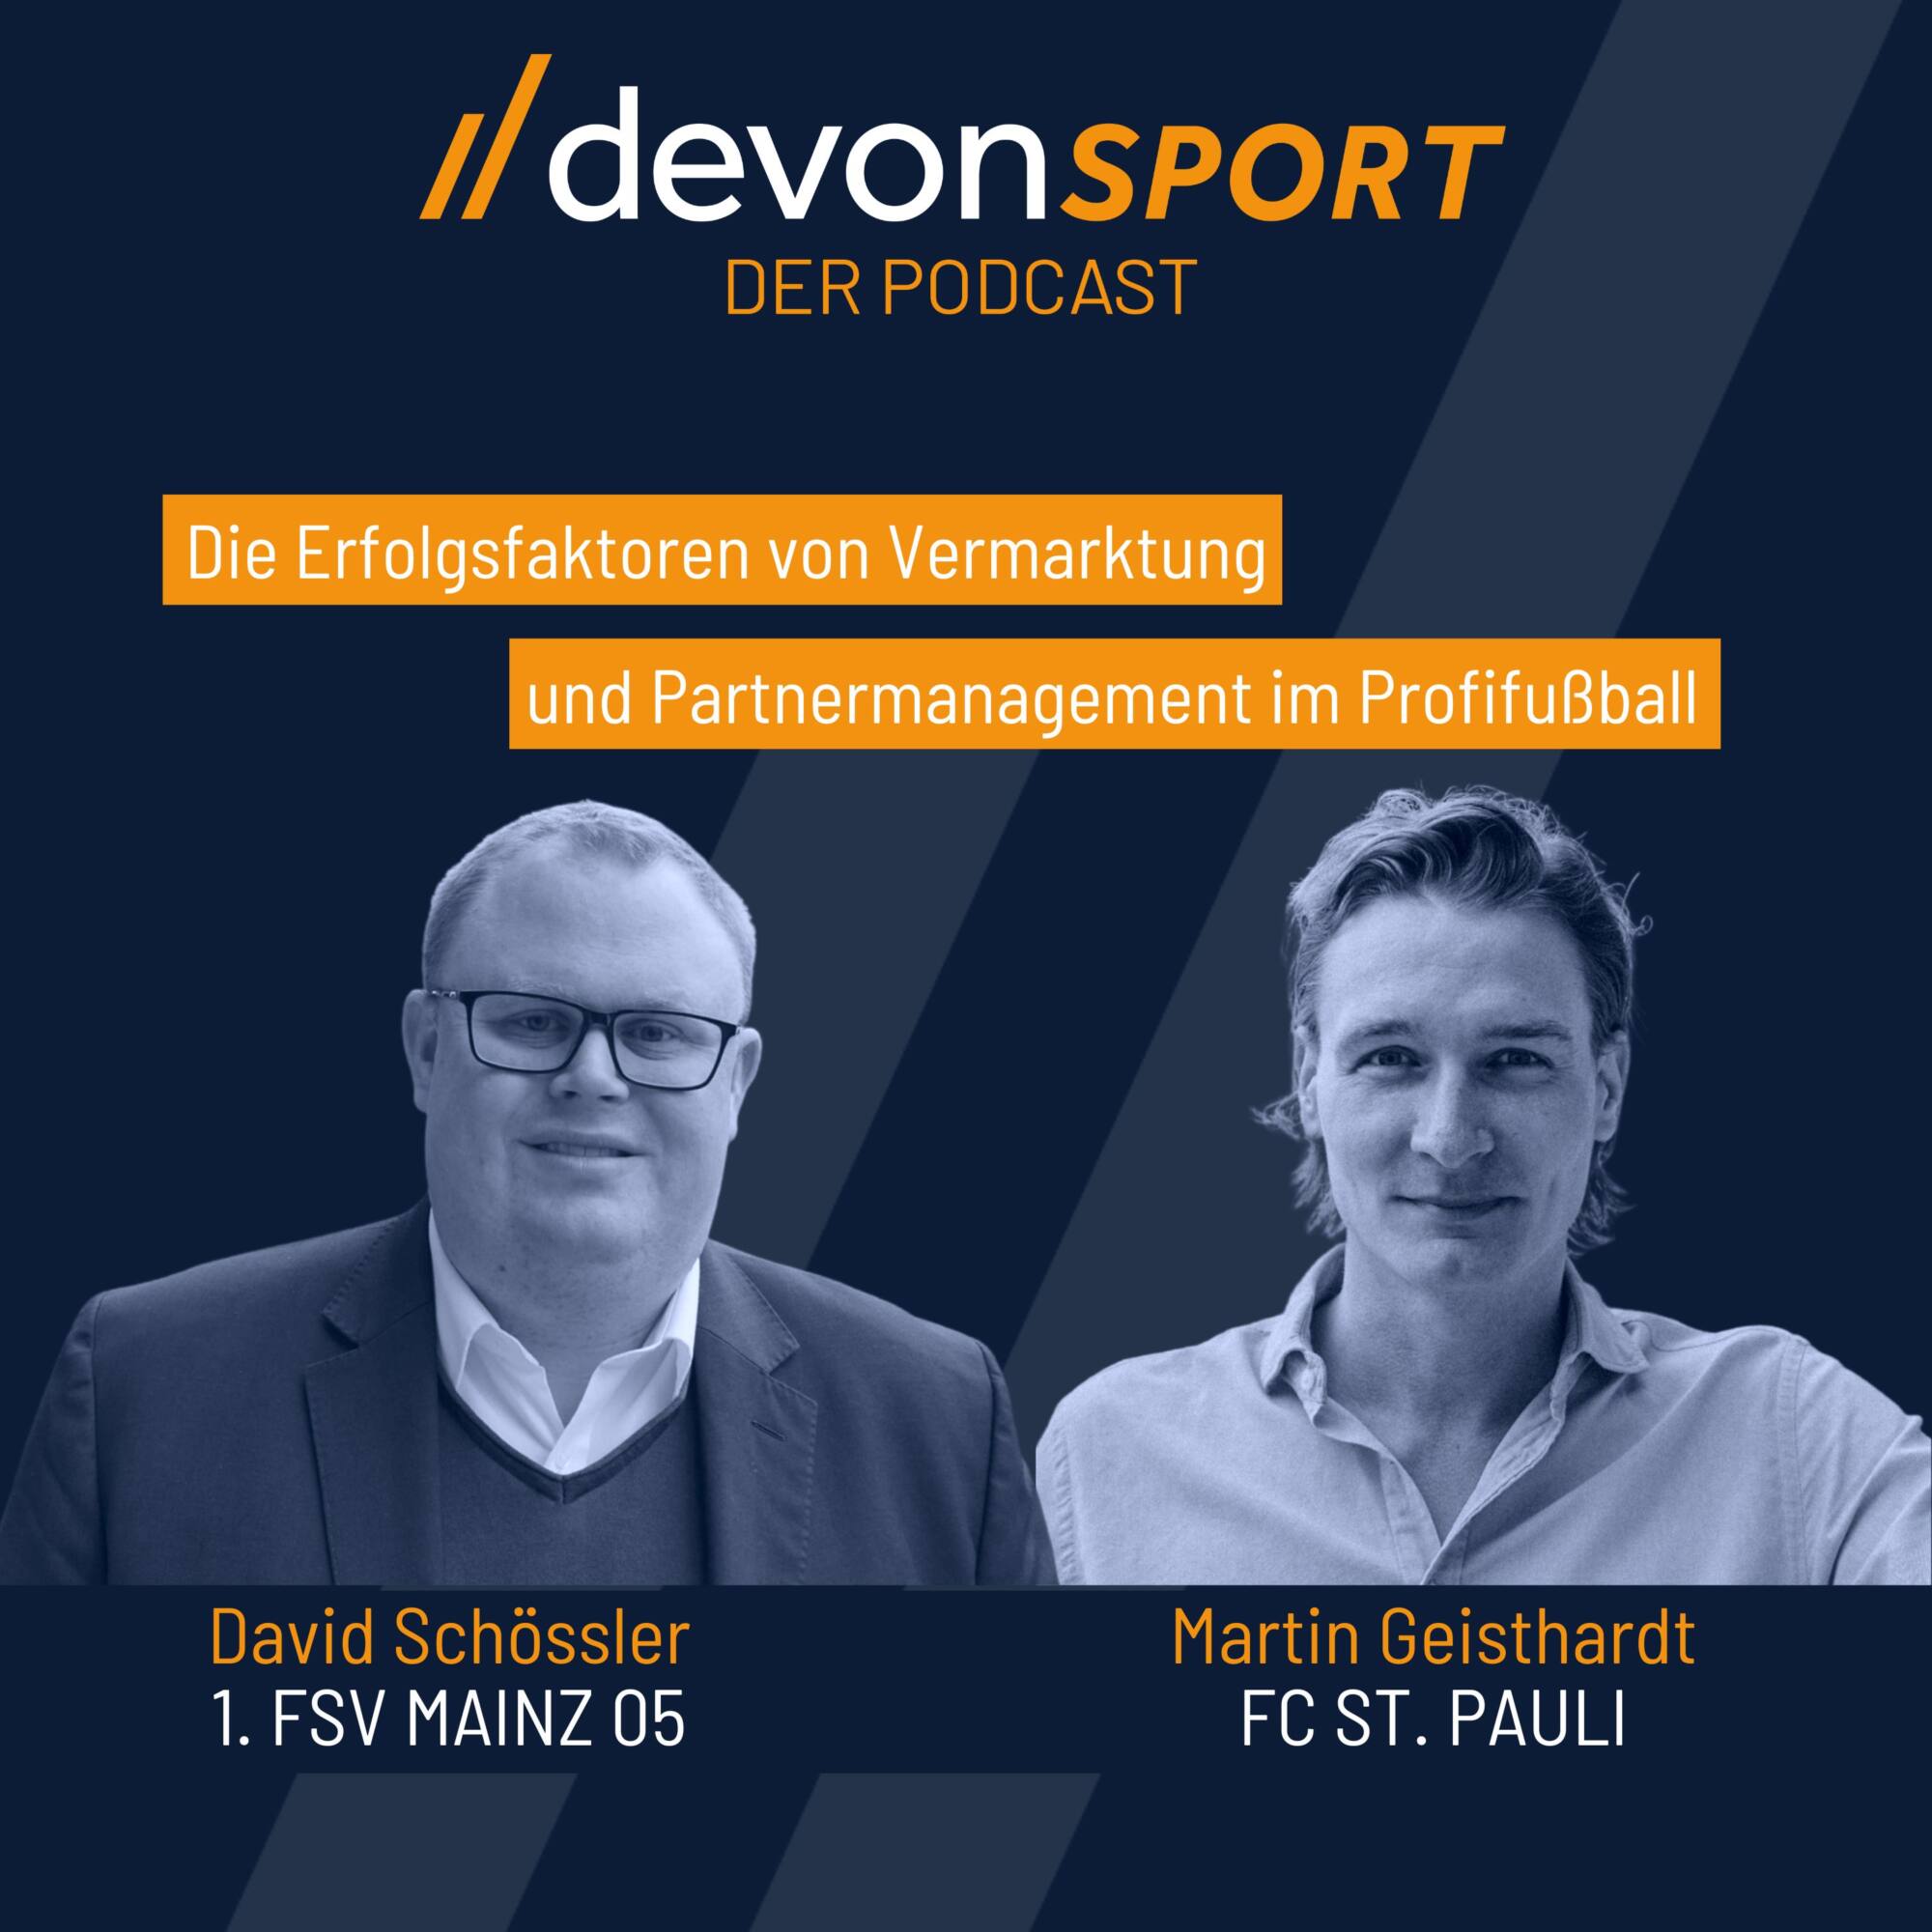 Die Erfolgsfaktoren von Vermarktung und Partnermanagement im Profifußball mit Martin Geisthardt und David Schössler #3